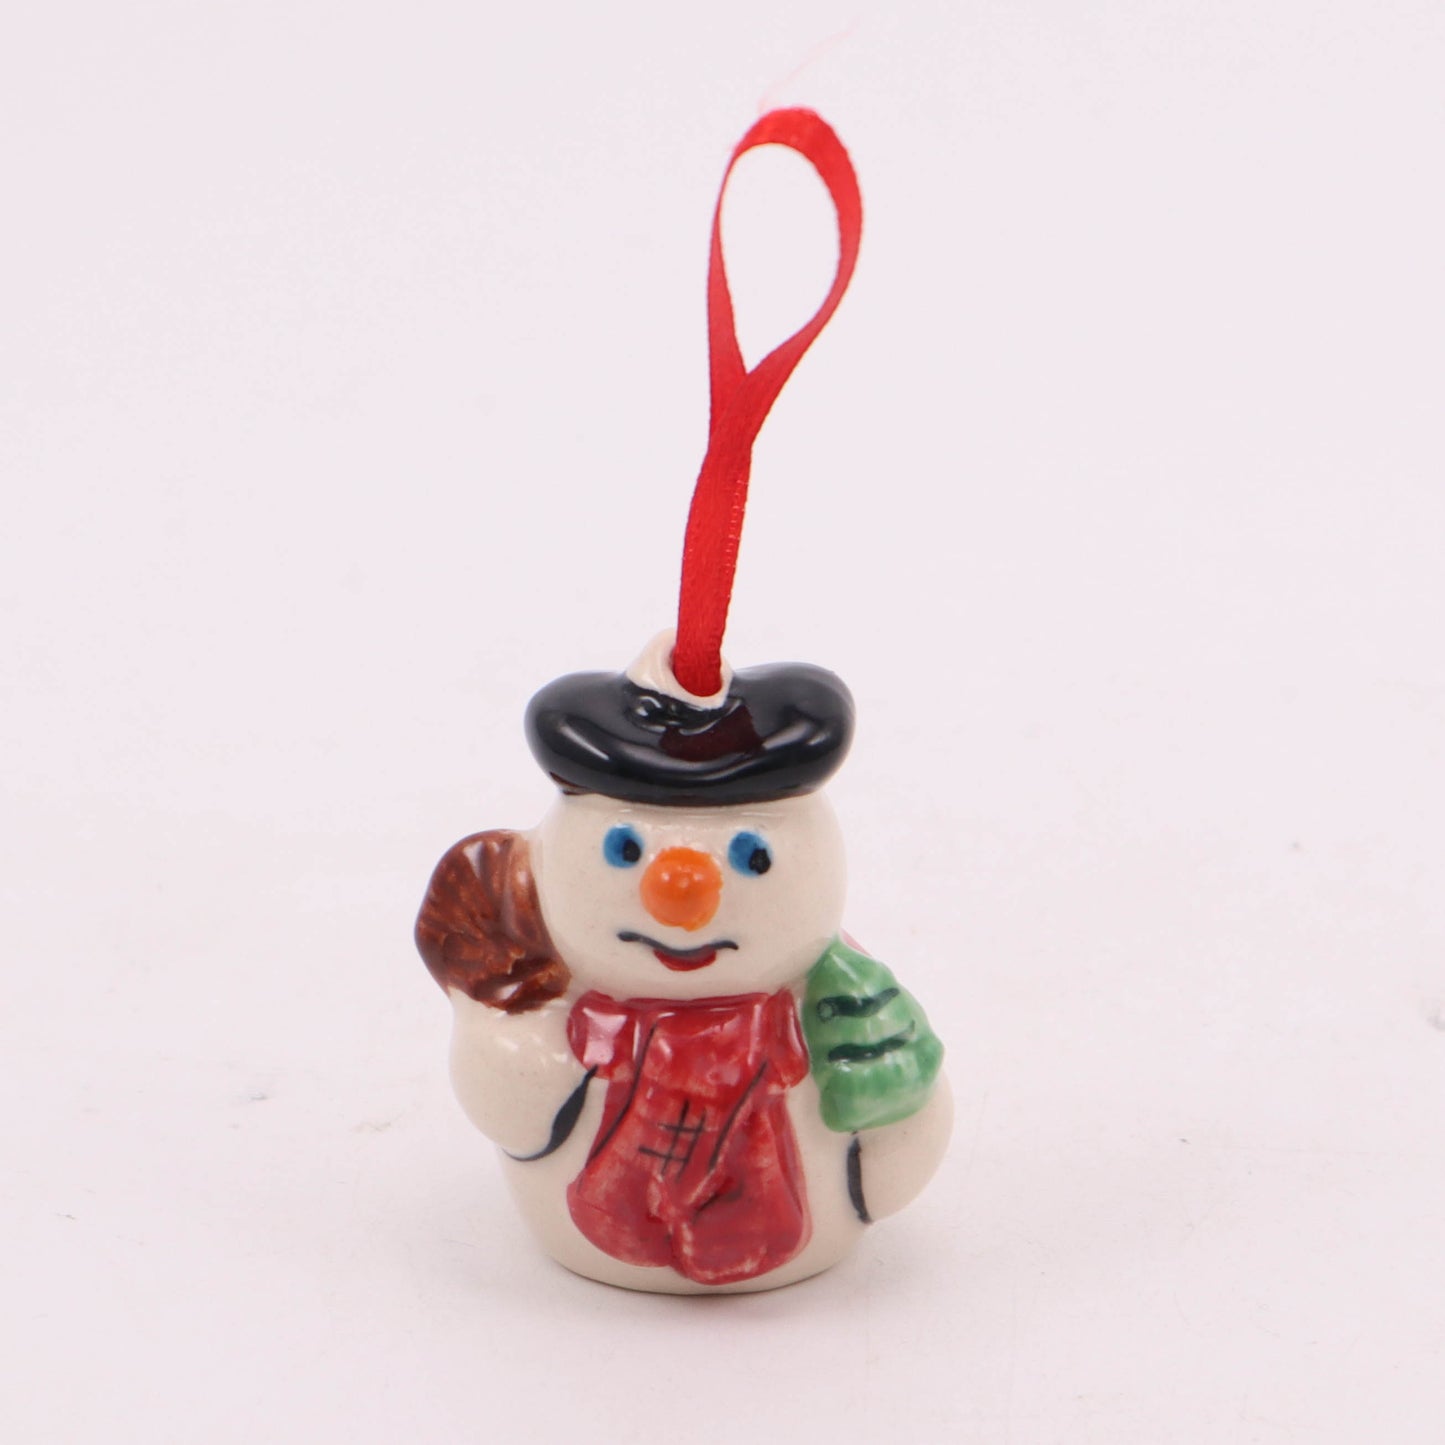 1.5"x2" Snowman Ornament. Pattern: Black Beret